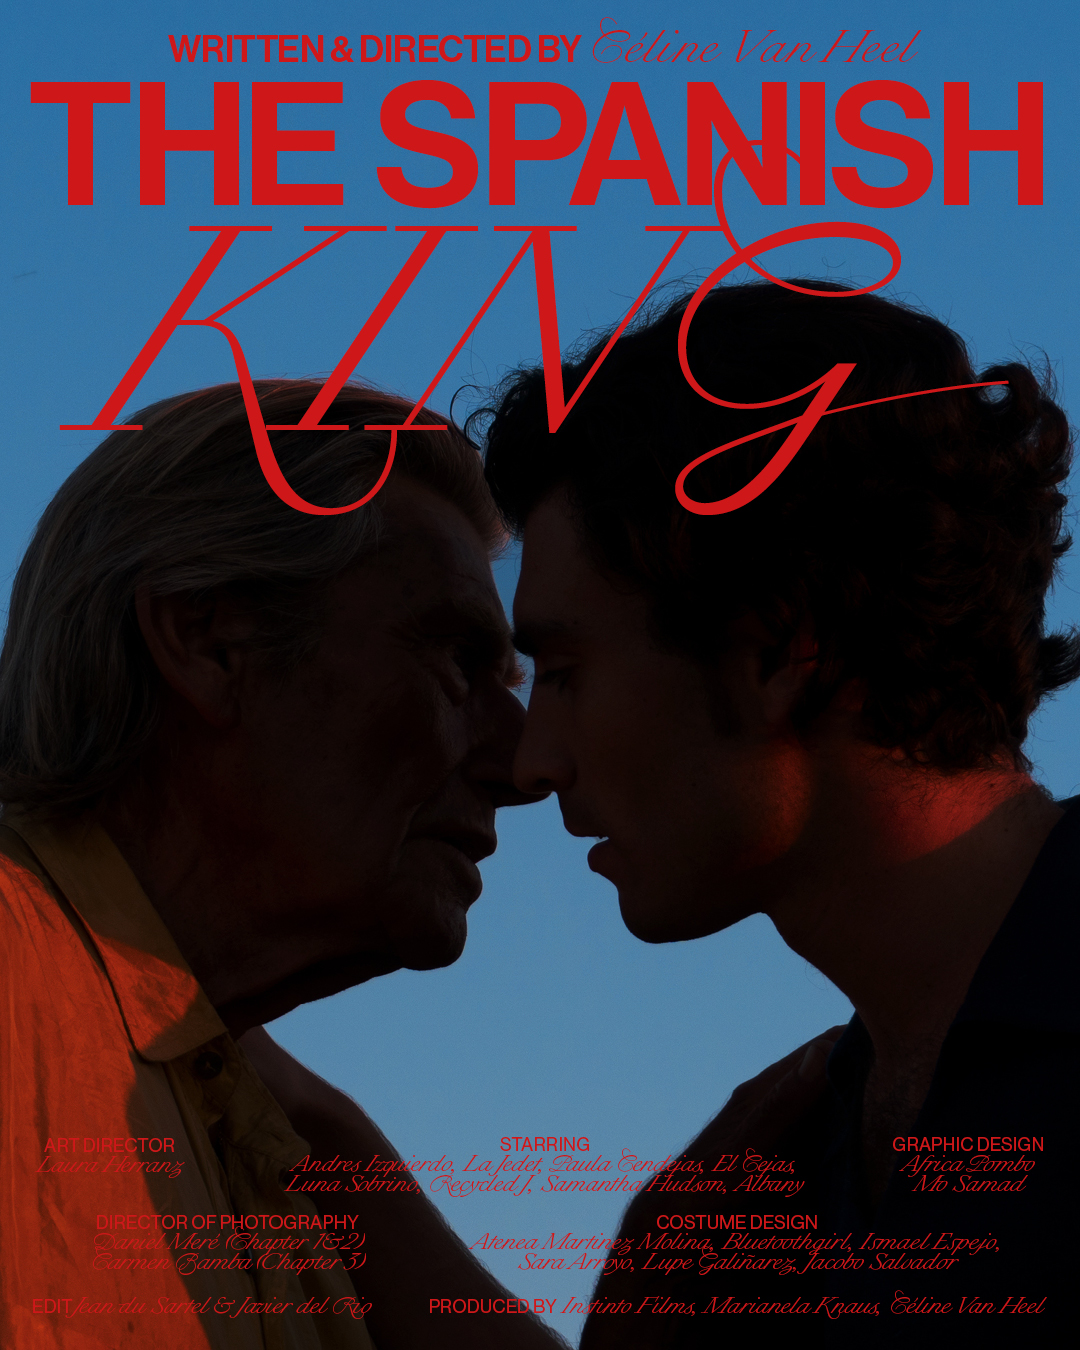 Affiche du film The spanish King représentant 2 ombres masculines se faisant face sur un fond bleu nuit